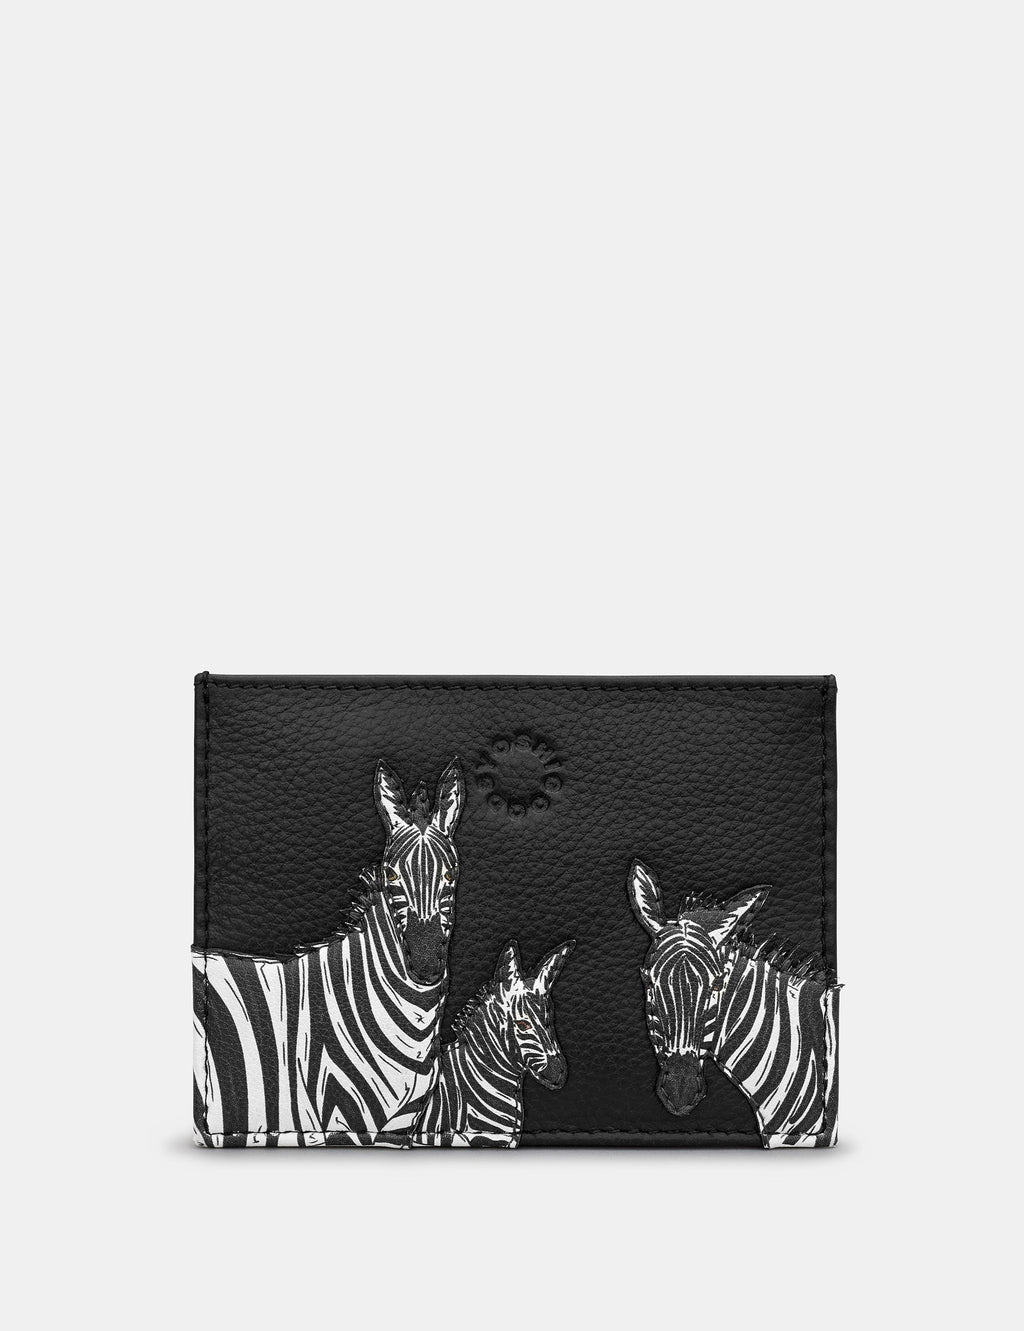 Yoshi - Black Zebra Card Holder RFID